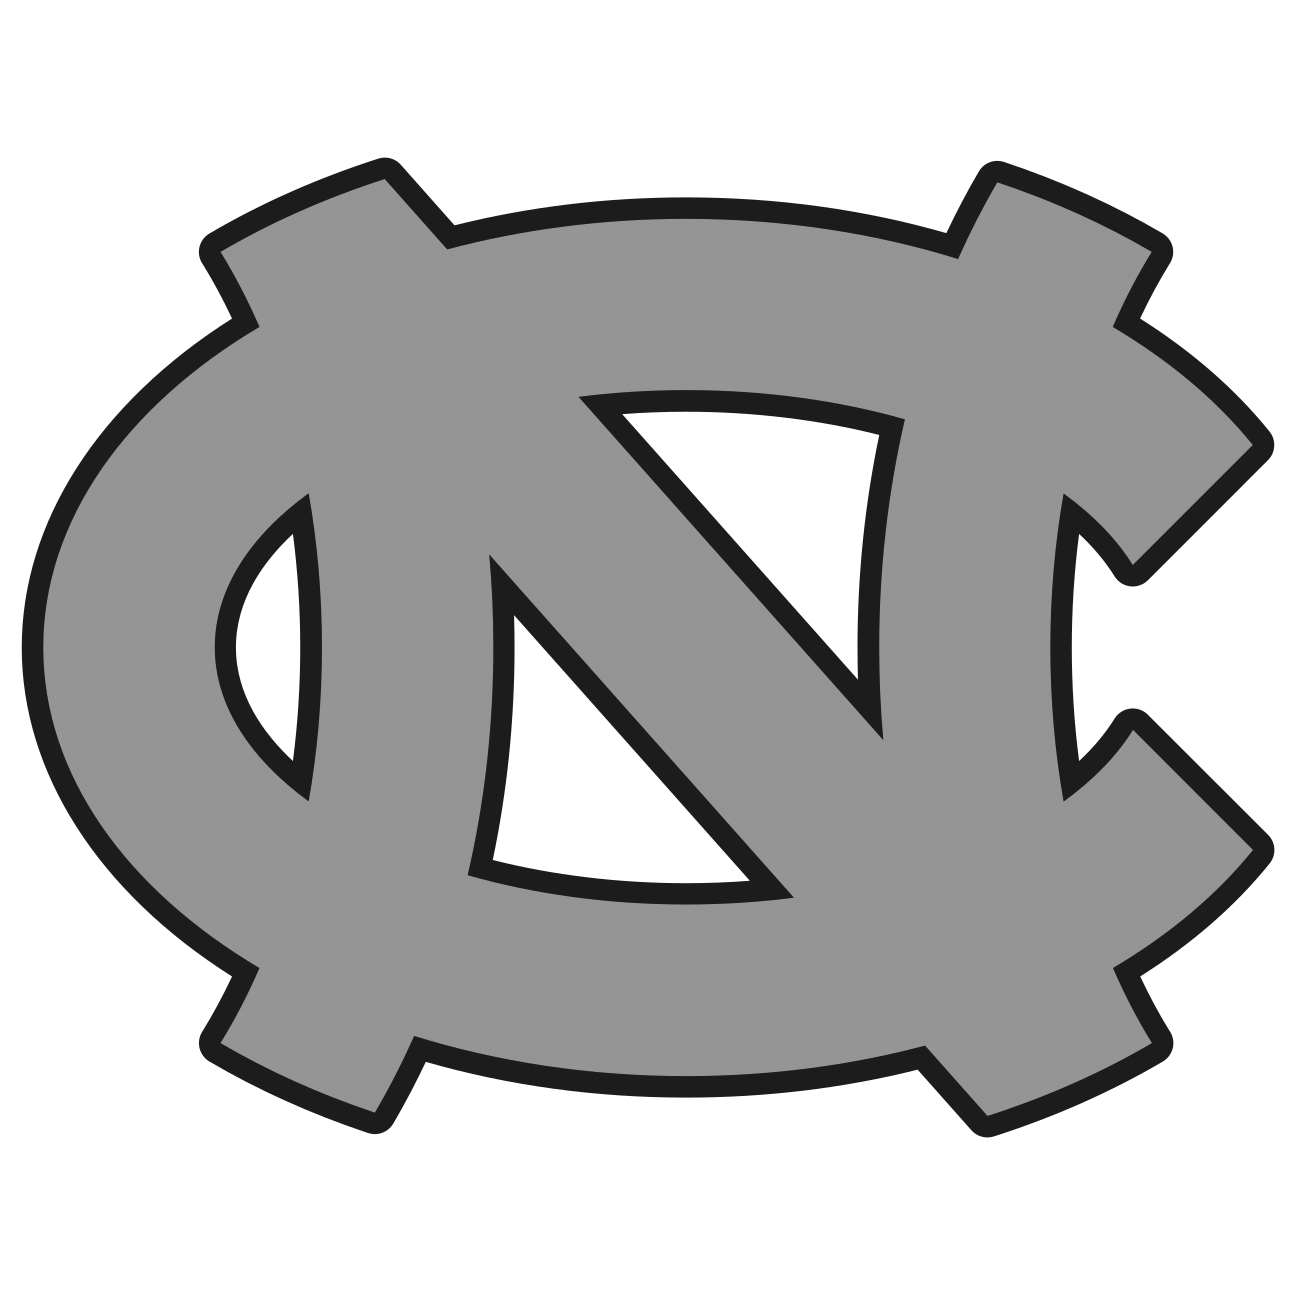 North-Carolina-Tar-Heels-logo-bw.png